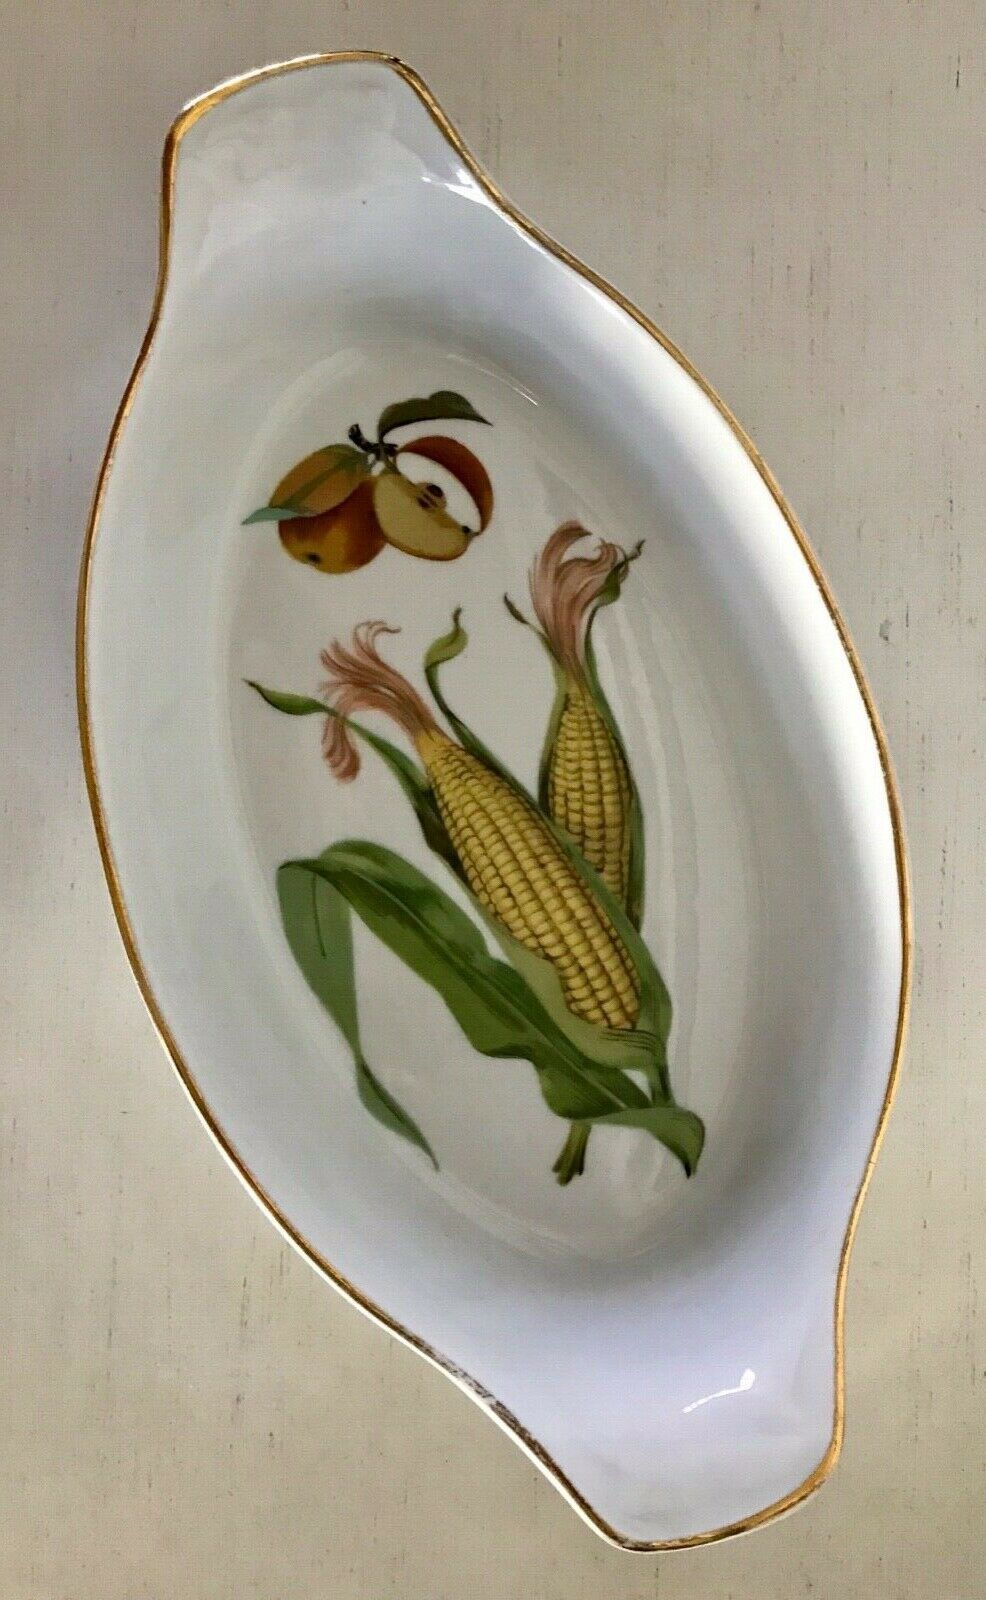 Primary image for Evesham Gold Augratin Porcelain Royal Worcester Fruit Gold Trim 13-3/4 x 7-1/2"